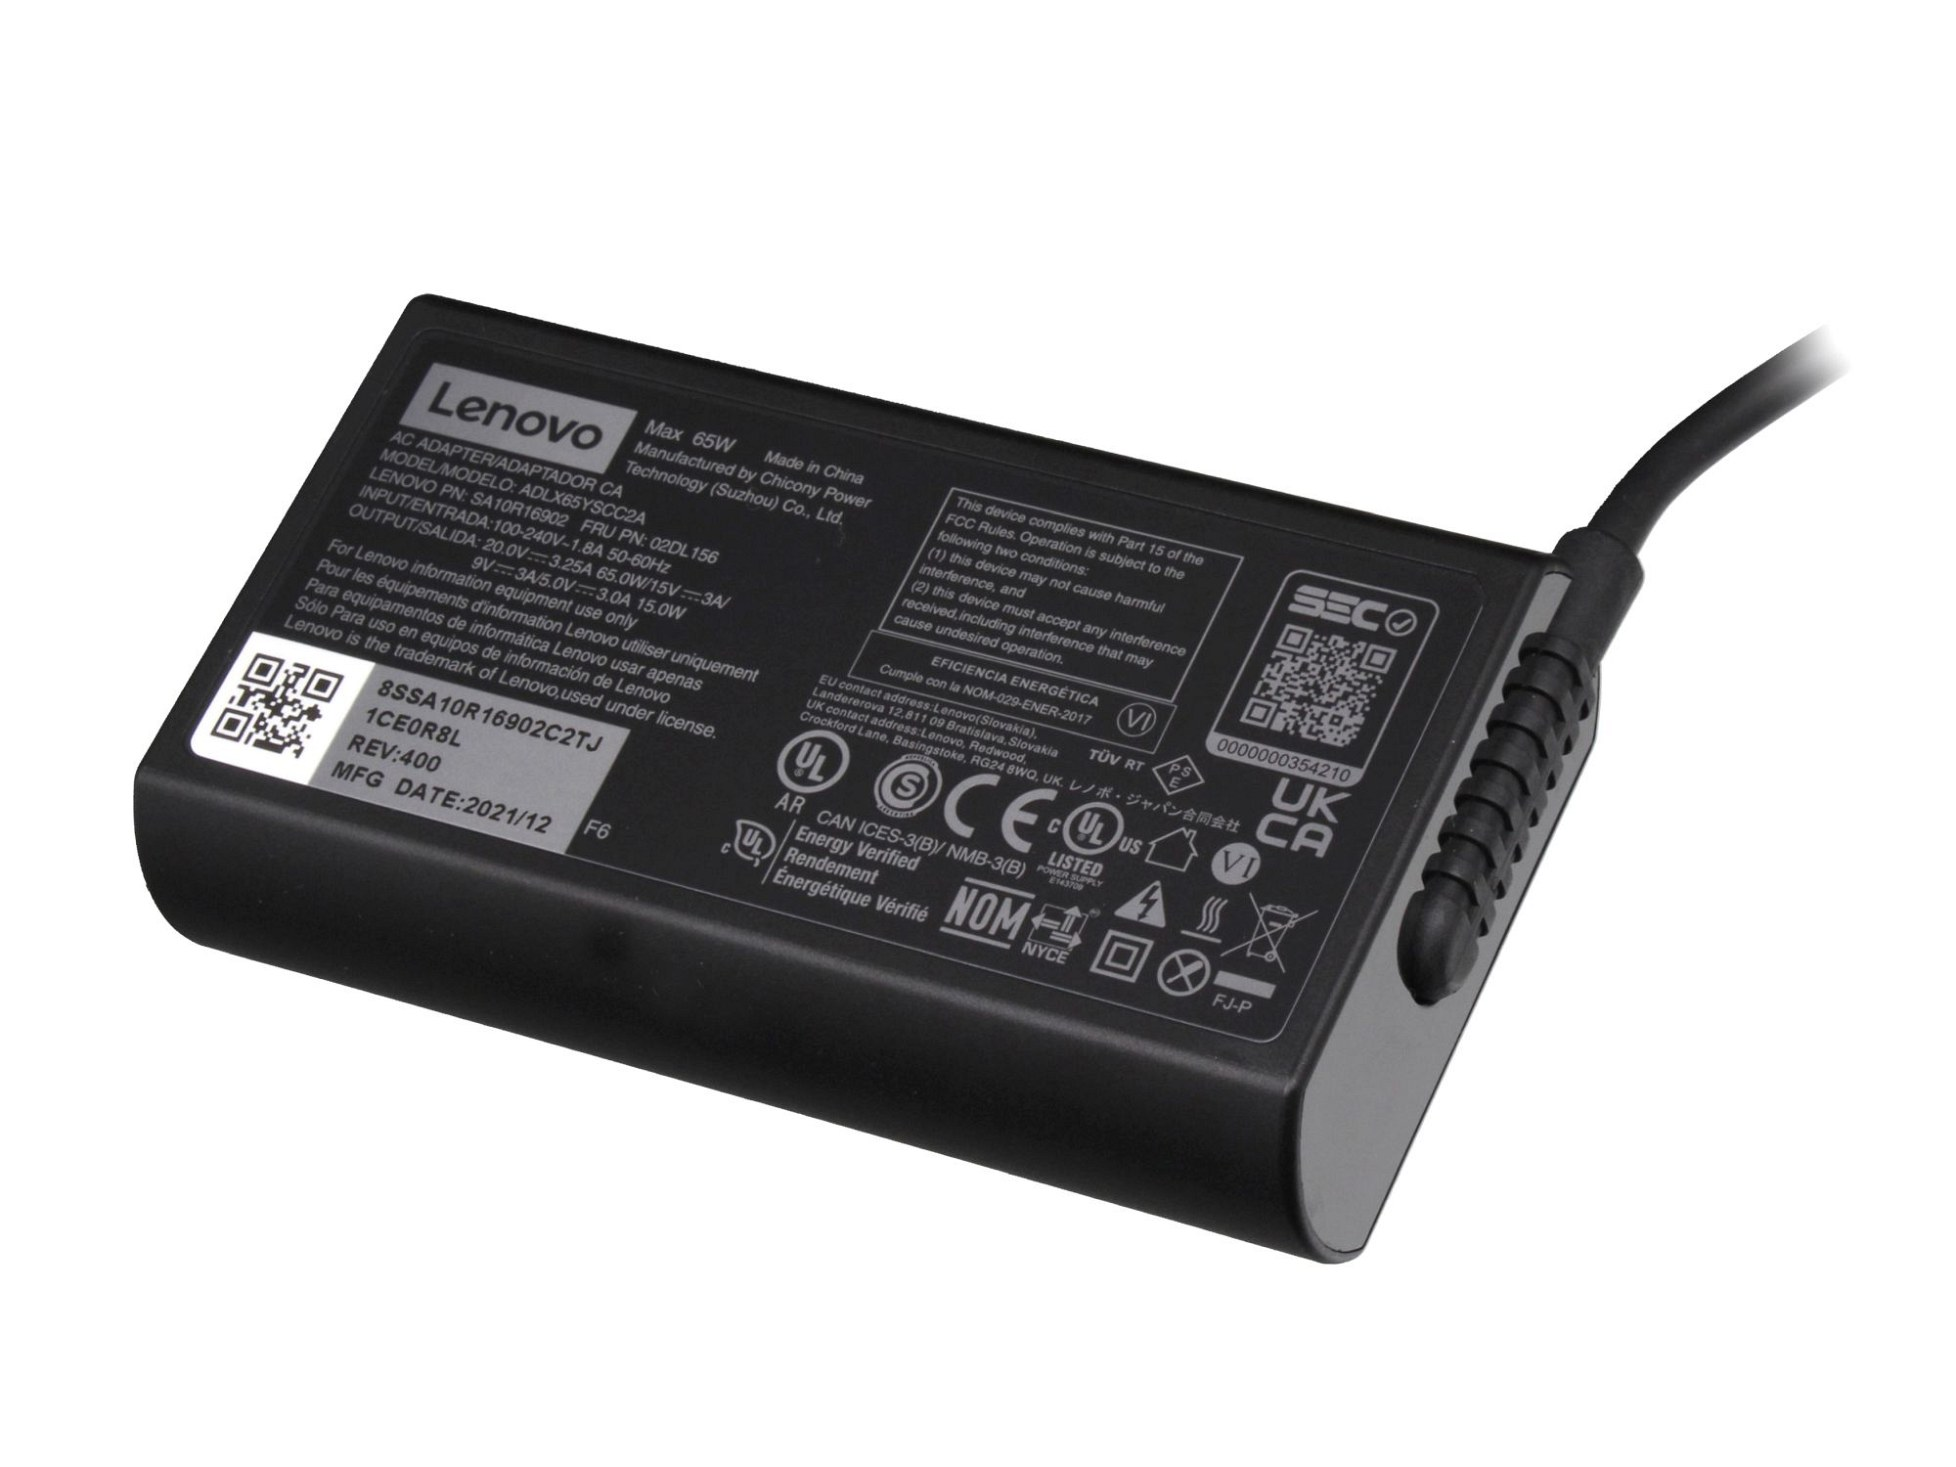 5A11J62100 USB-C Netzteil Watt abgerundetes LENOVO 65 Original